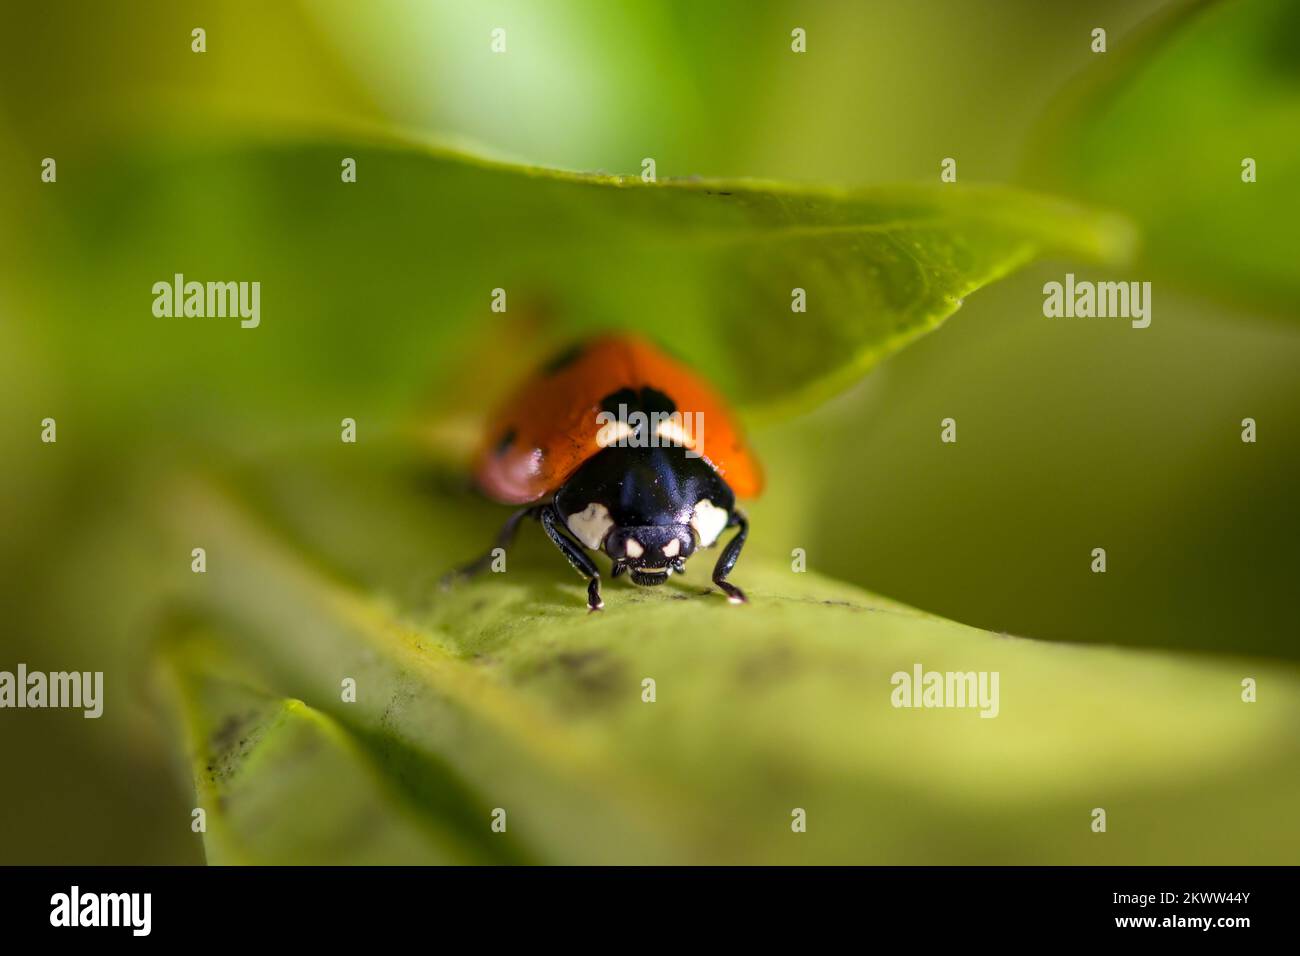 Makrobild eines Marienkäfers, Coccinellidae, Käfer, der den Stiel einer orangefarbenen Pflanze hochgeht, rote, schwarze und weiße Augen in Herzform Stockfoto